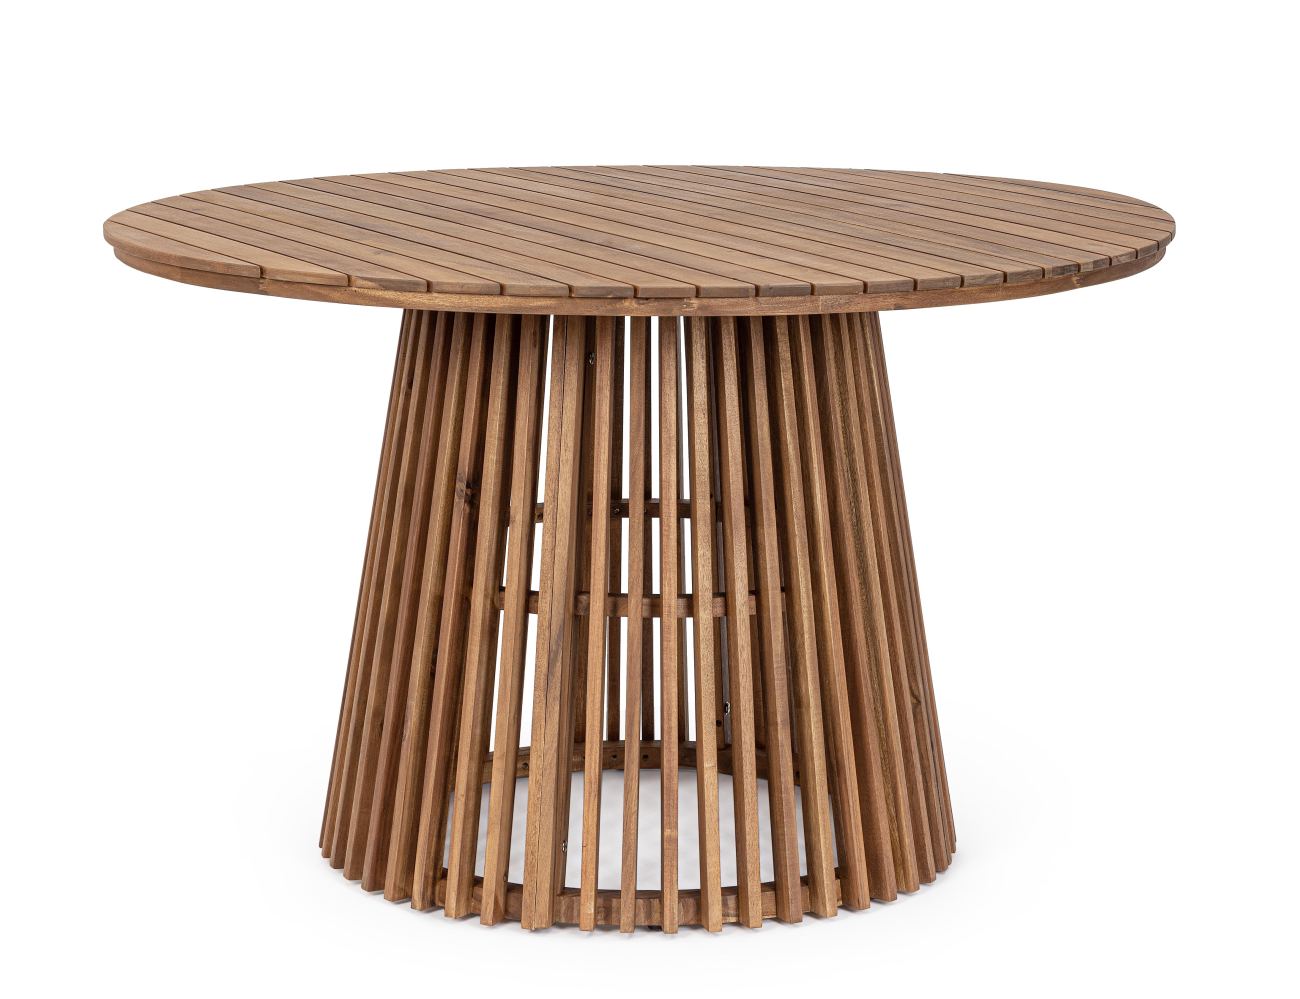 Der Gartenesstisch Rodano überzeugt mit seinem modernen Design. Gefertigt wurde er aus Akzienholz, welches einen natürlichen Farbton besitzt. Das Gestell ist auch aus Akazienholz. Der Esstisch besitzt einen Durchmesser von 120 cm.